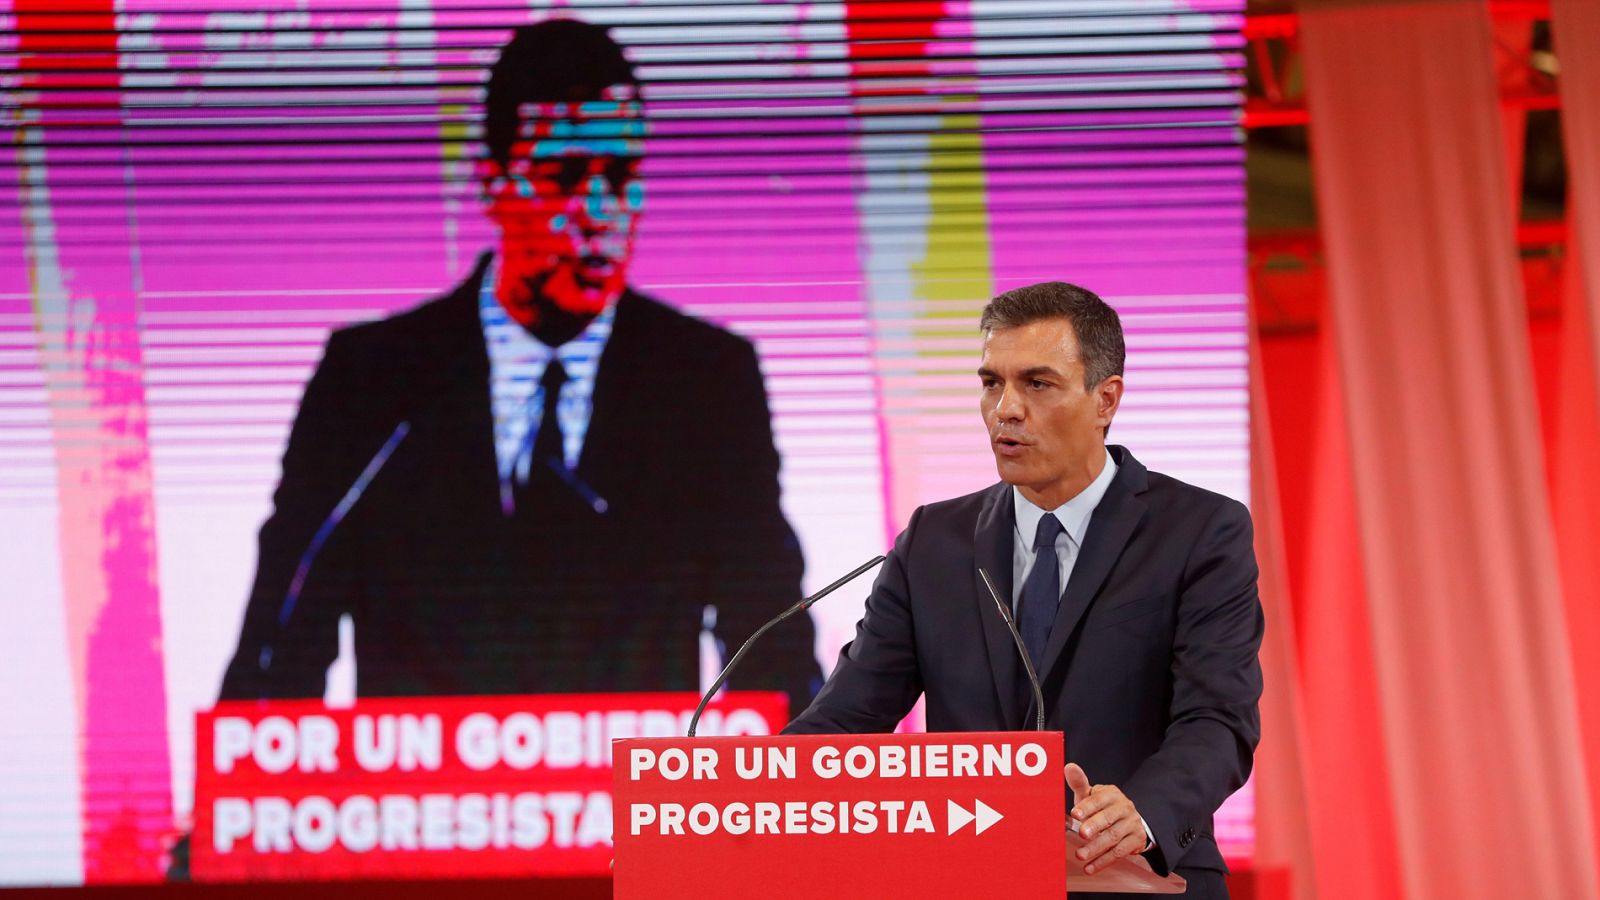 PSOE: Sánchez propone "Oficina de cumplimiento del acuerdo" y una comisión de seguimiento para lograr el pacto con Podemos